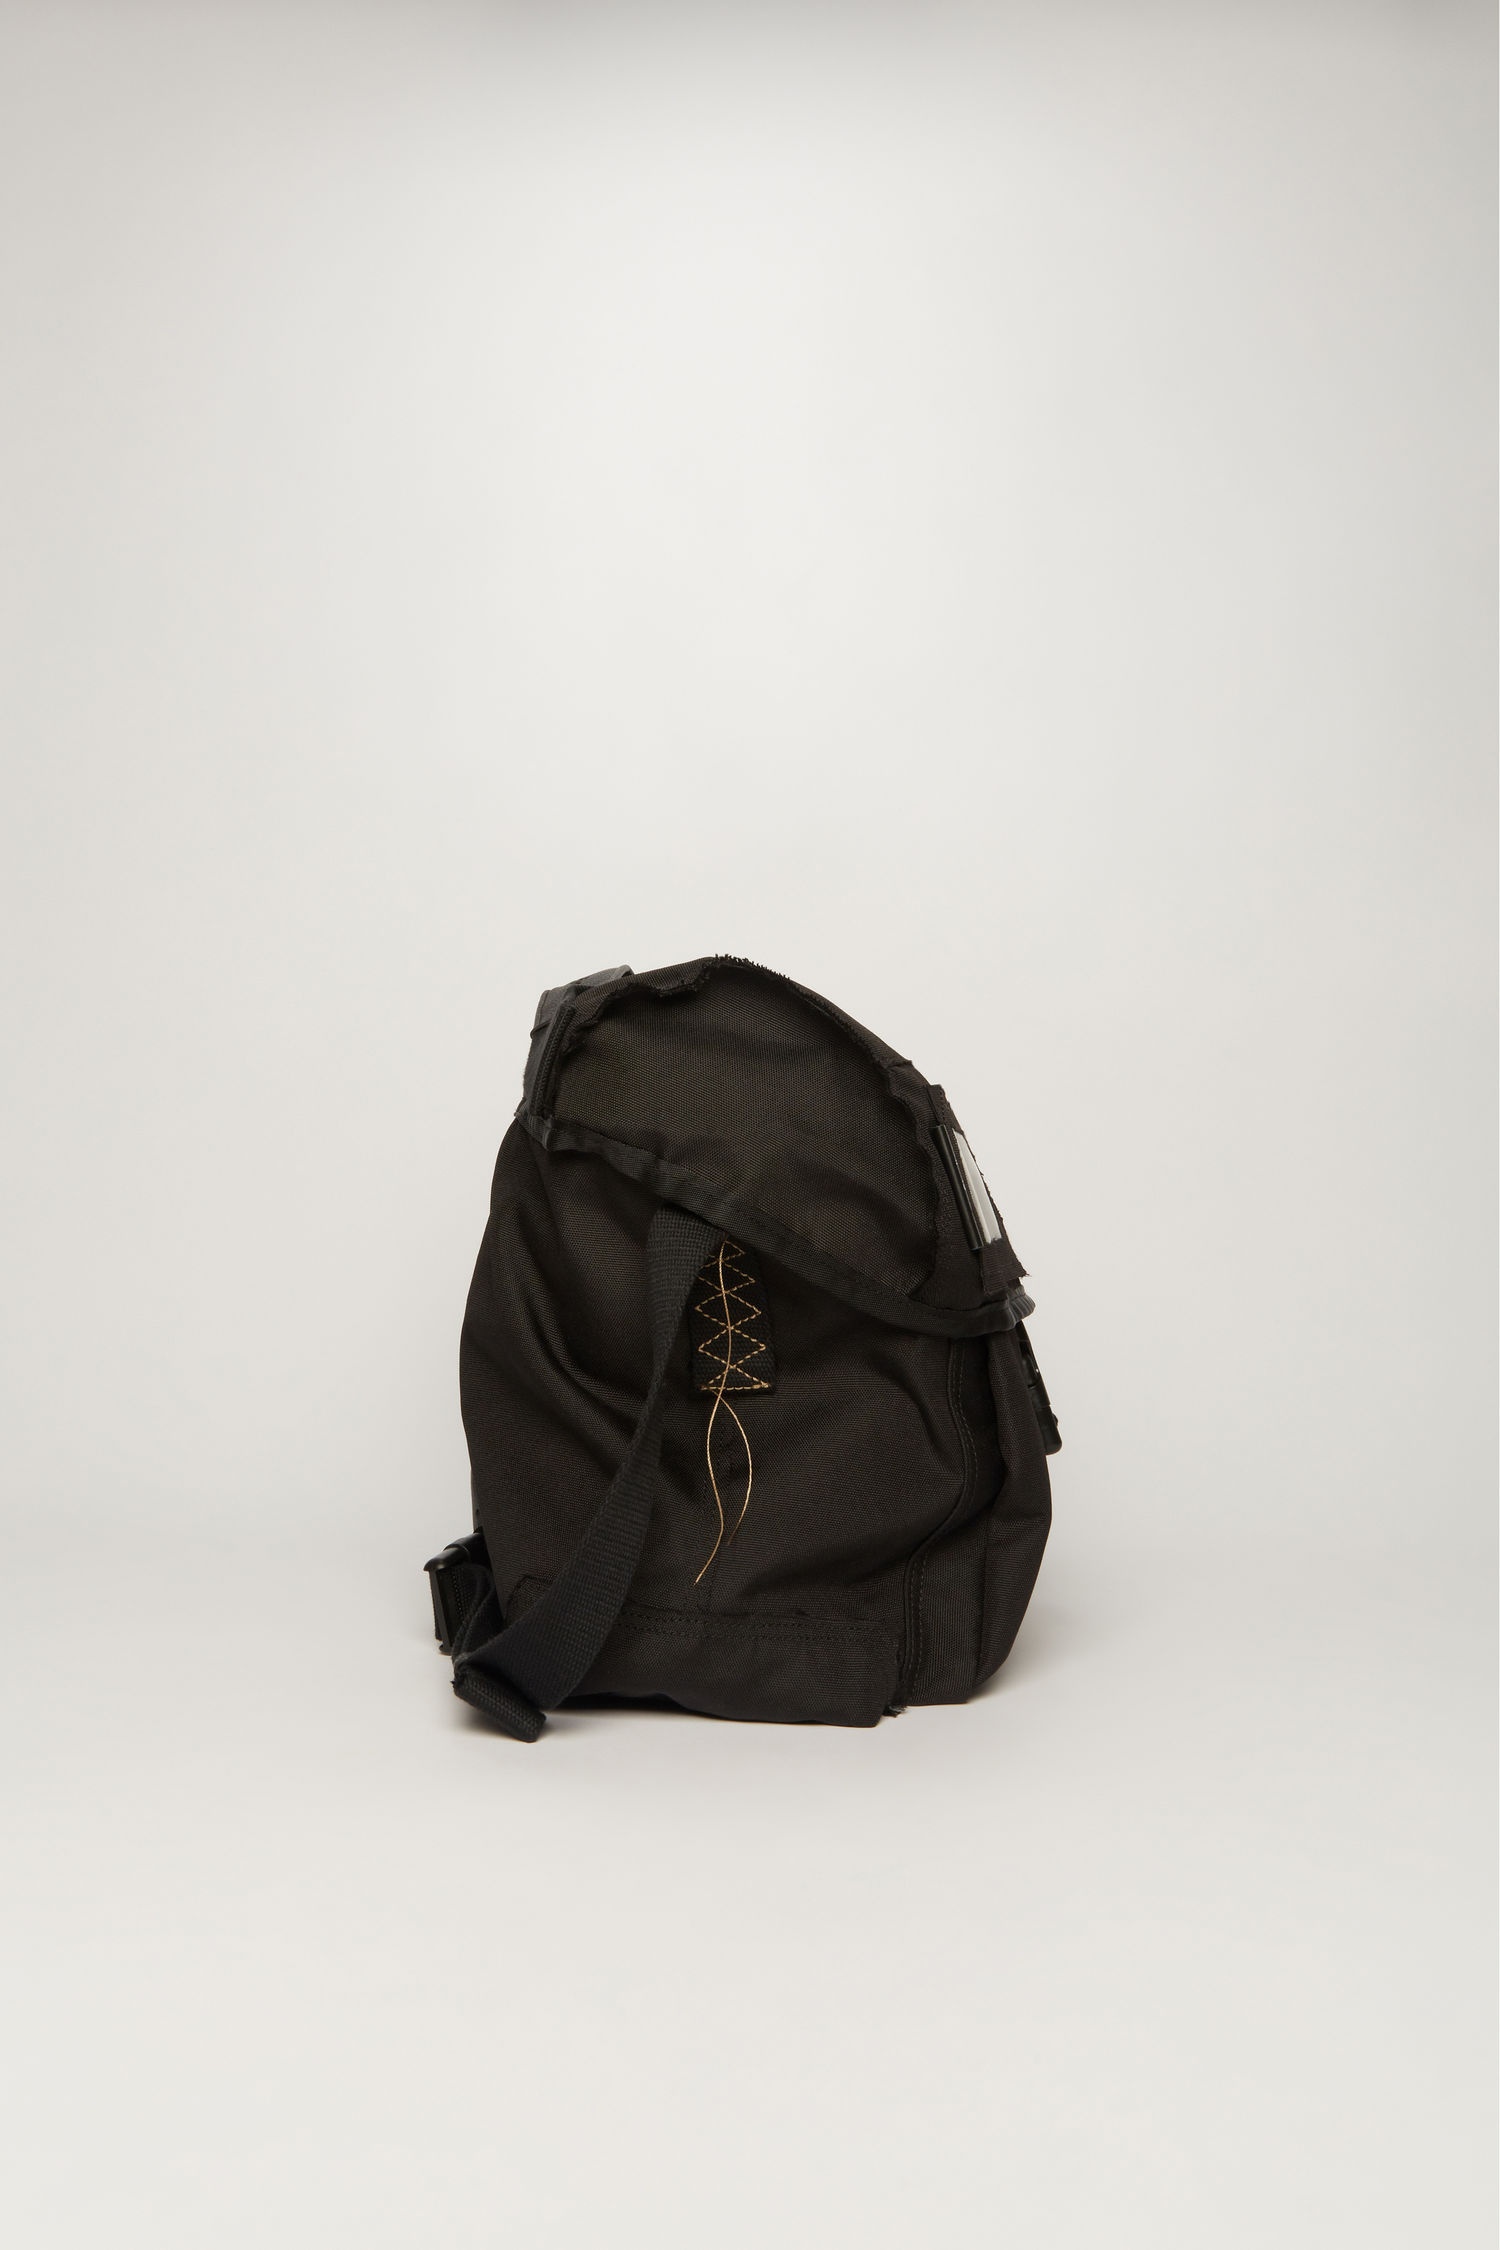 Messenger bag black - 2